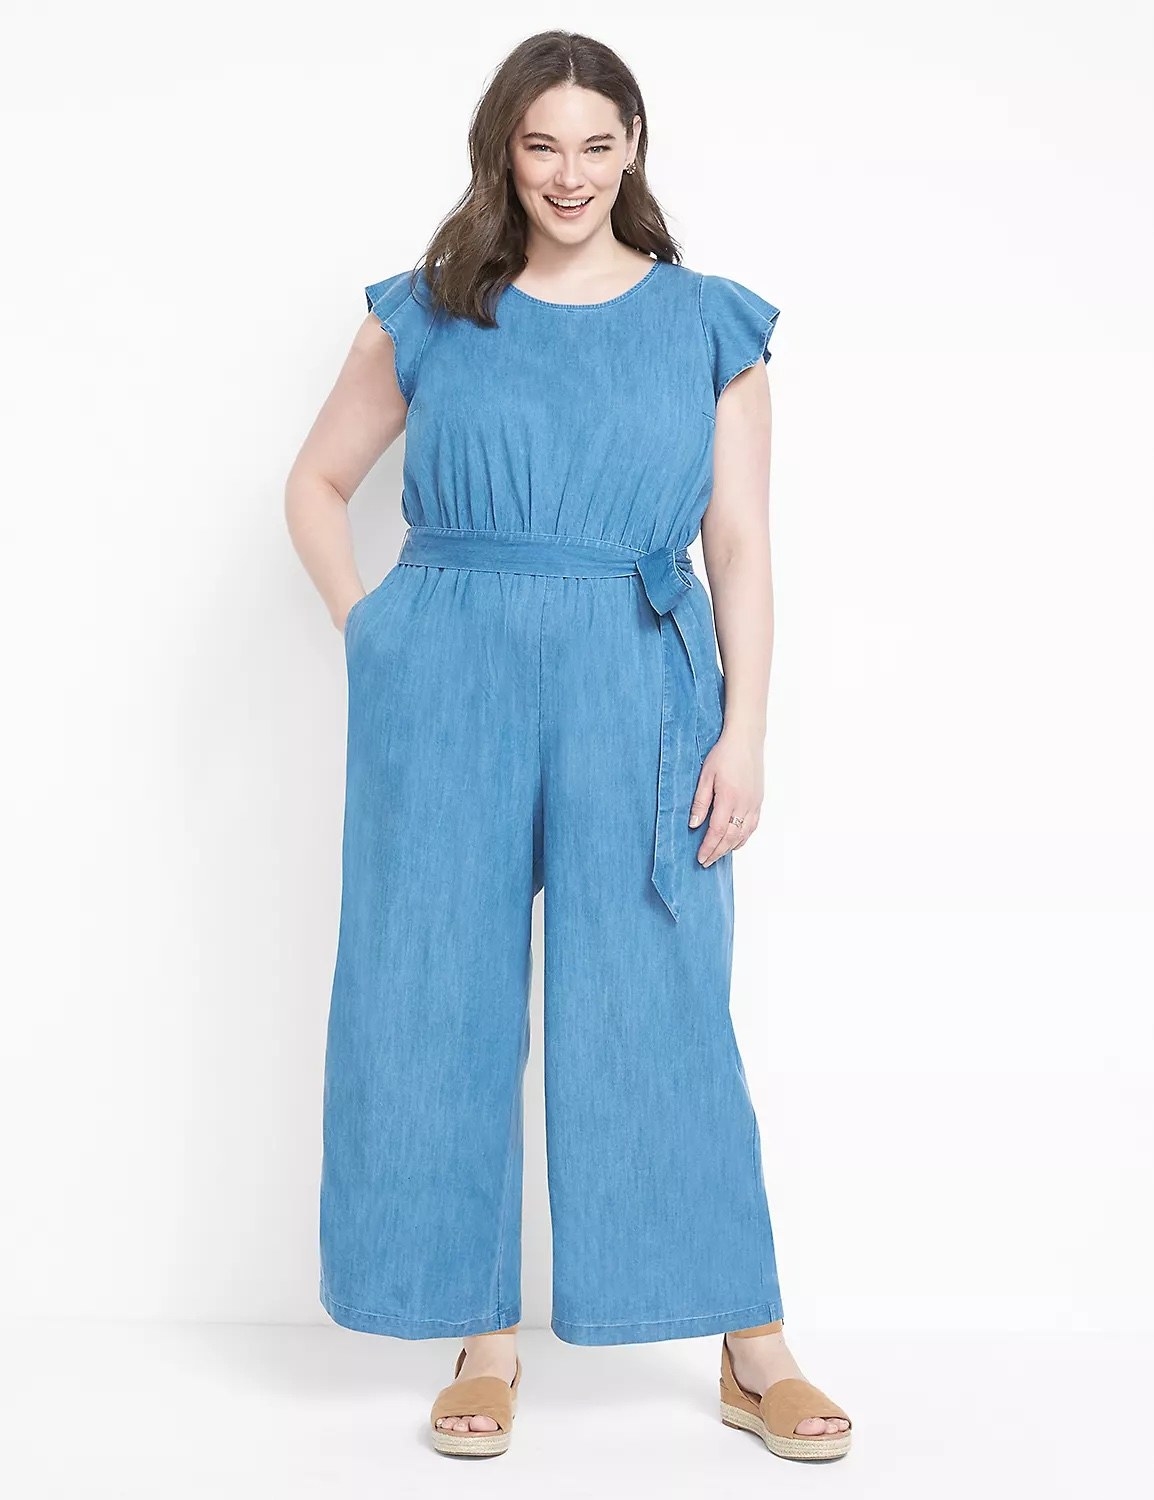 Model wearing blue jumpsuit